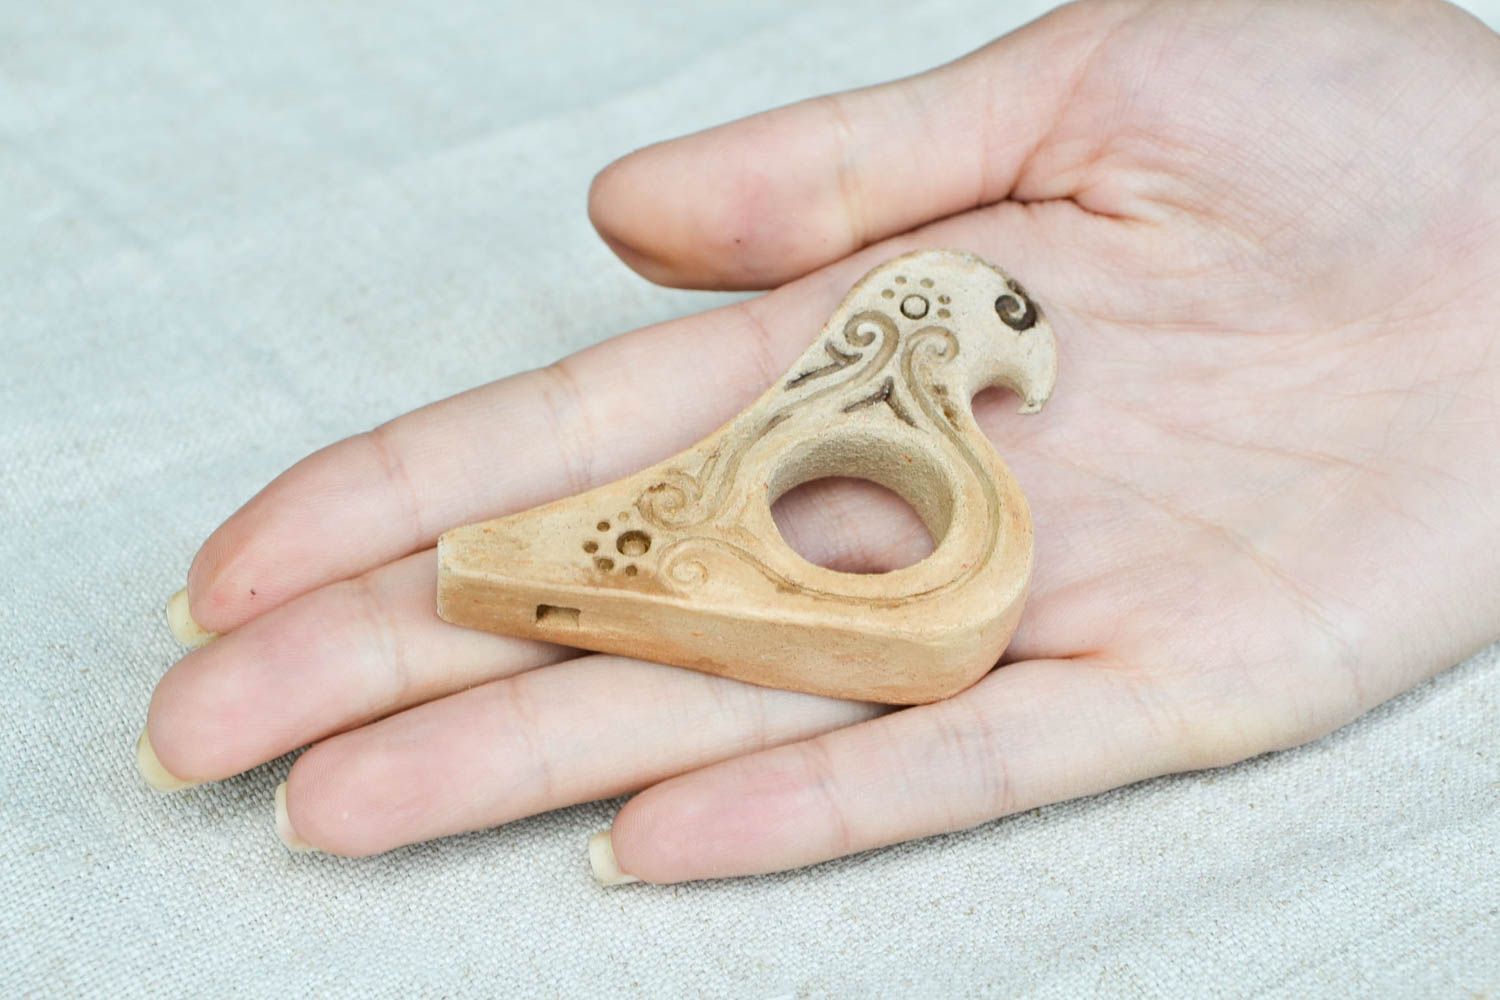 Ocarina Instrument handmade Flöte aus Ton Musikinstrument für Kinder ausgefallen foto 2